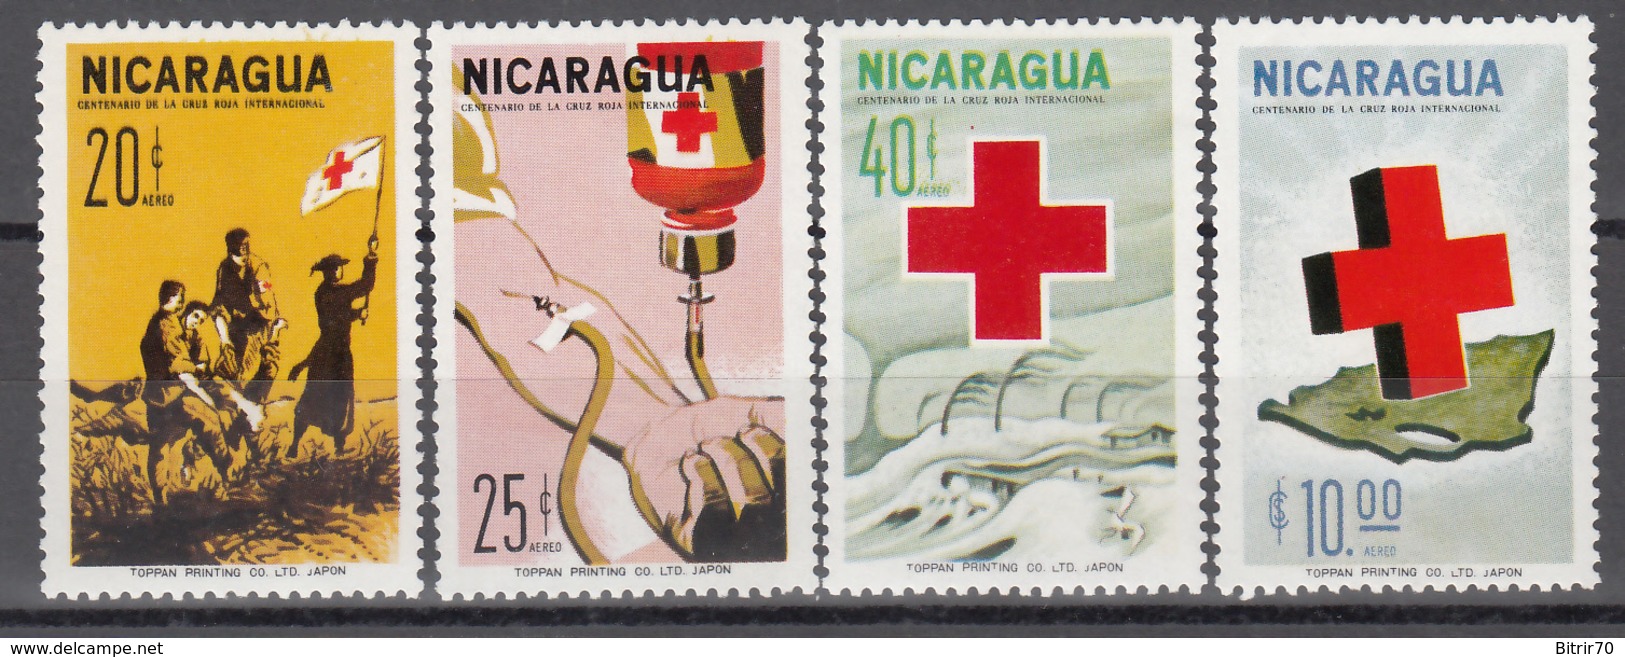 1965  Aéreo, Yvert Nº 528 / 581   MNH,  Centenario De La Cruz Roja Internacional - Nicaragua